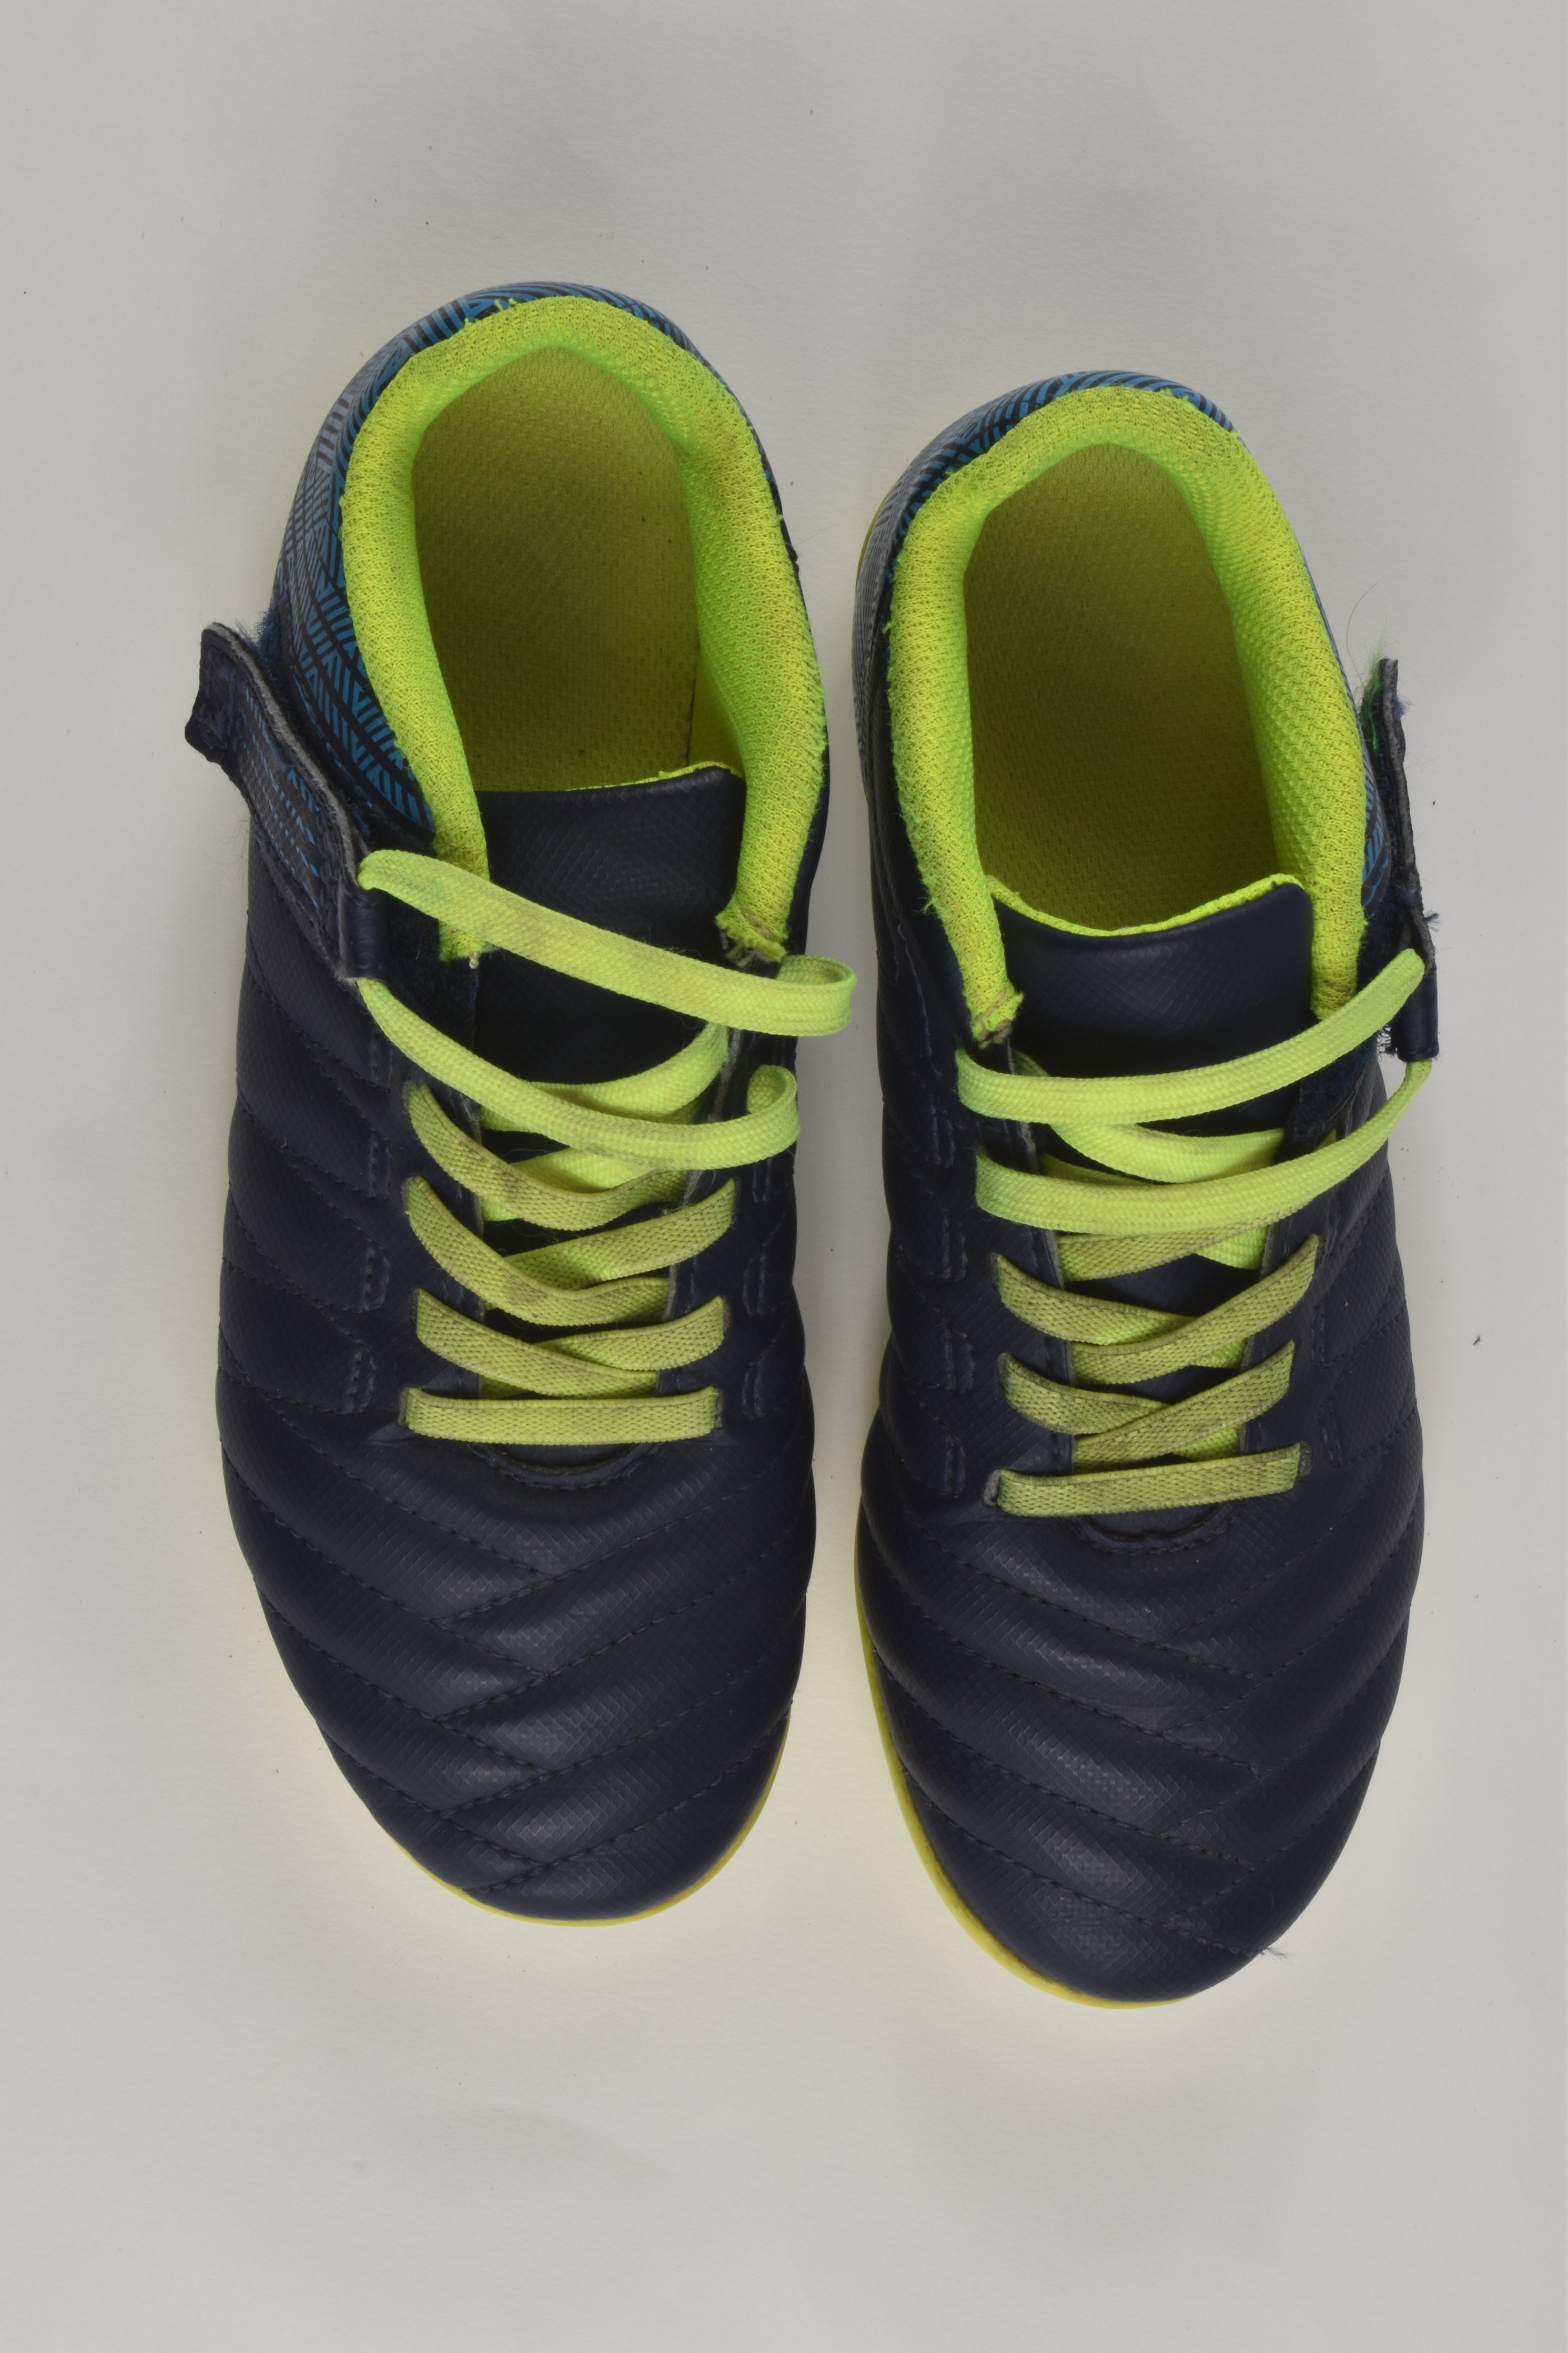 Amazon.in: Kipsta Football Boots